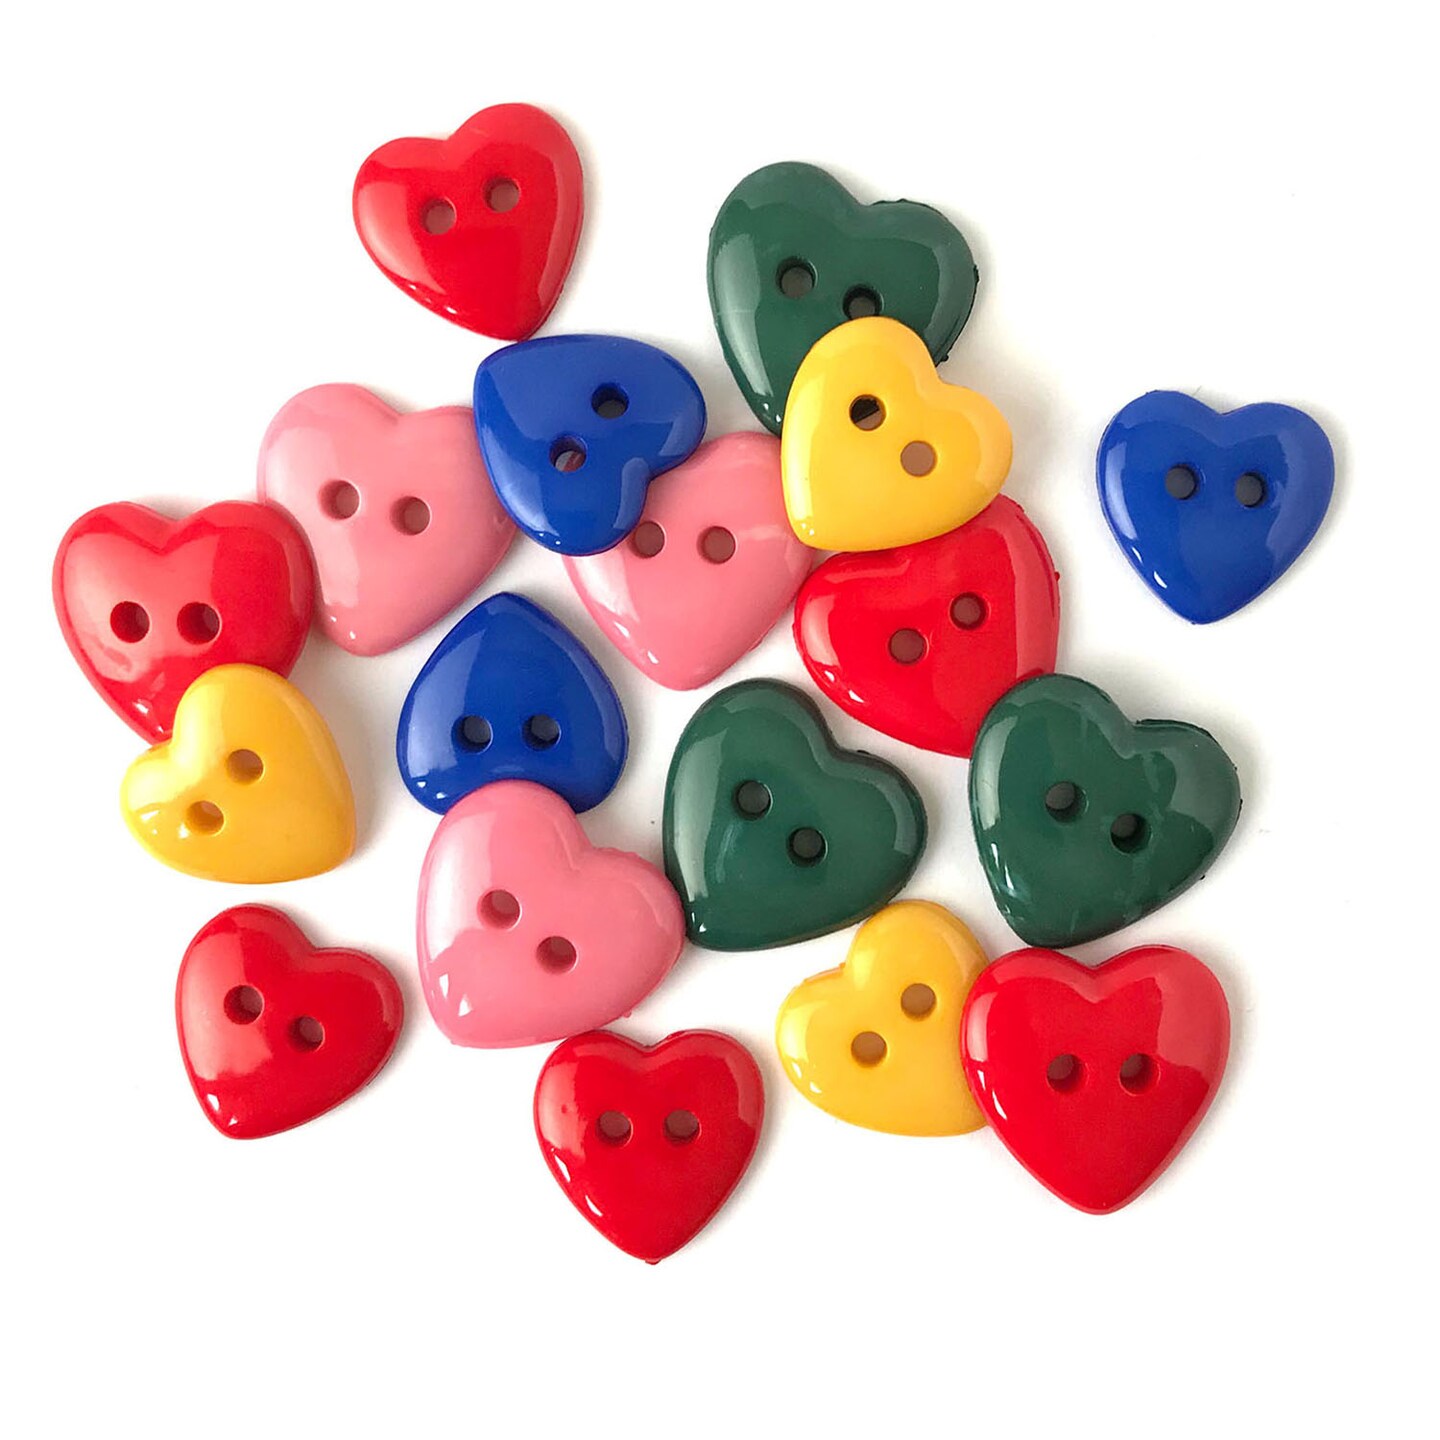 Buttons Galore & More Heart Novelty Button Assortment Buttons